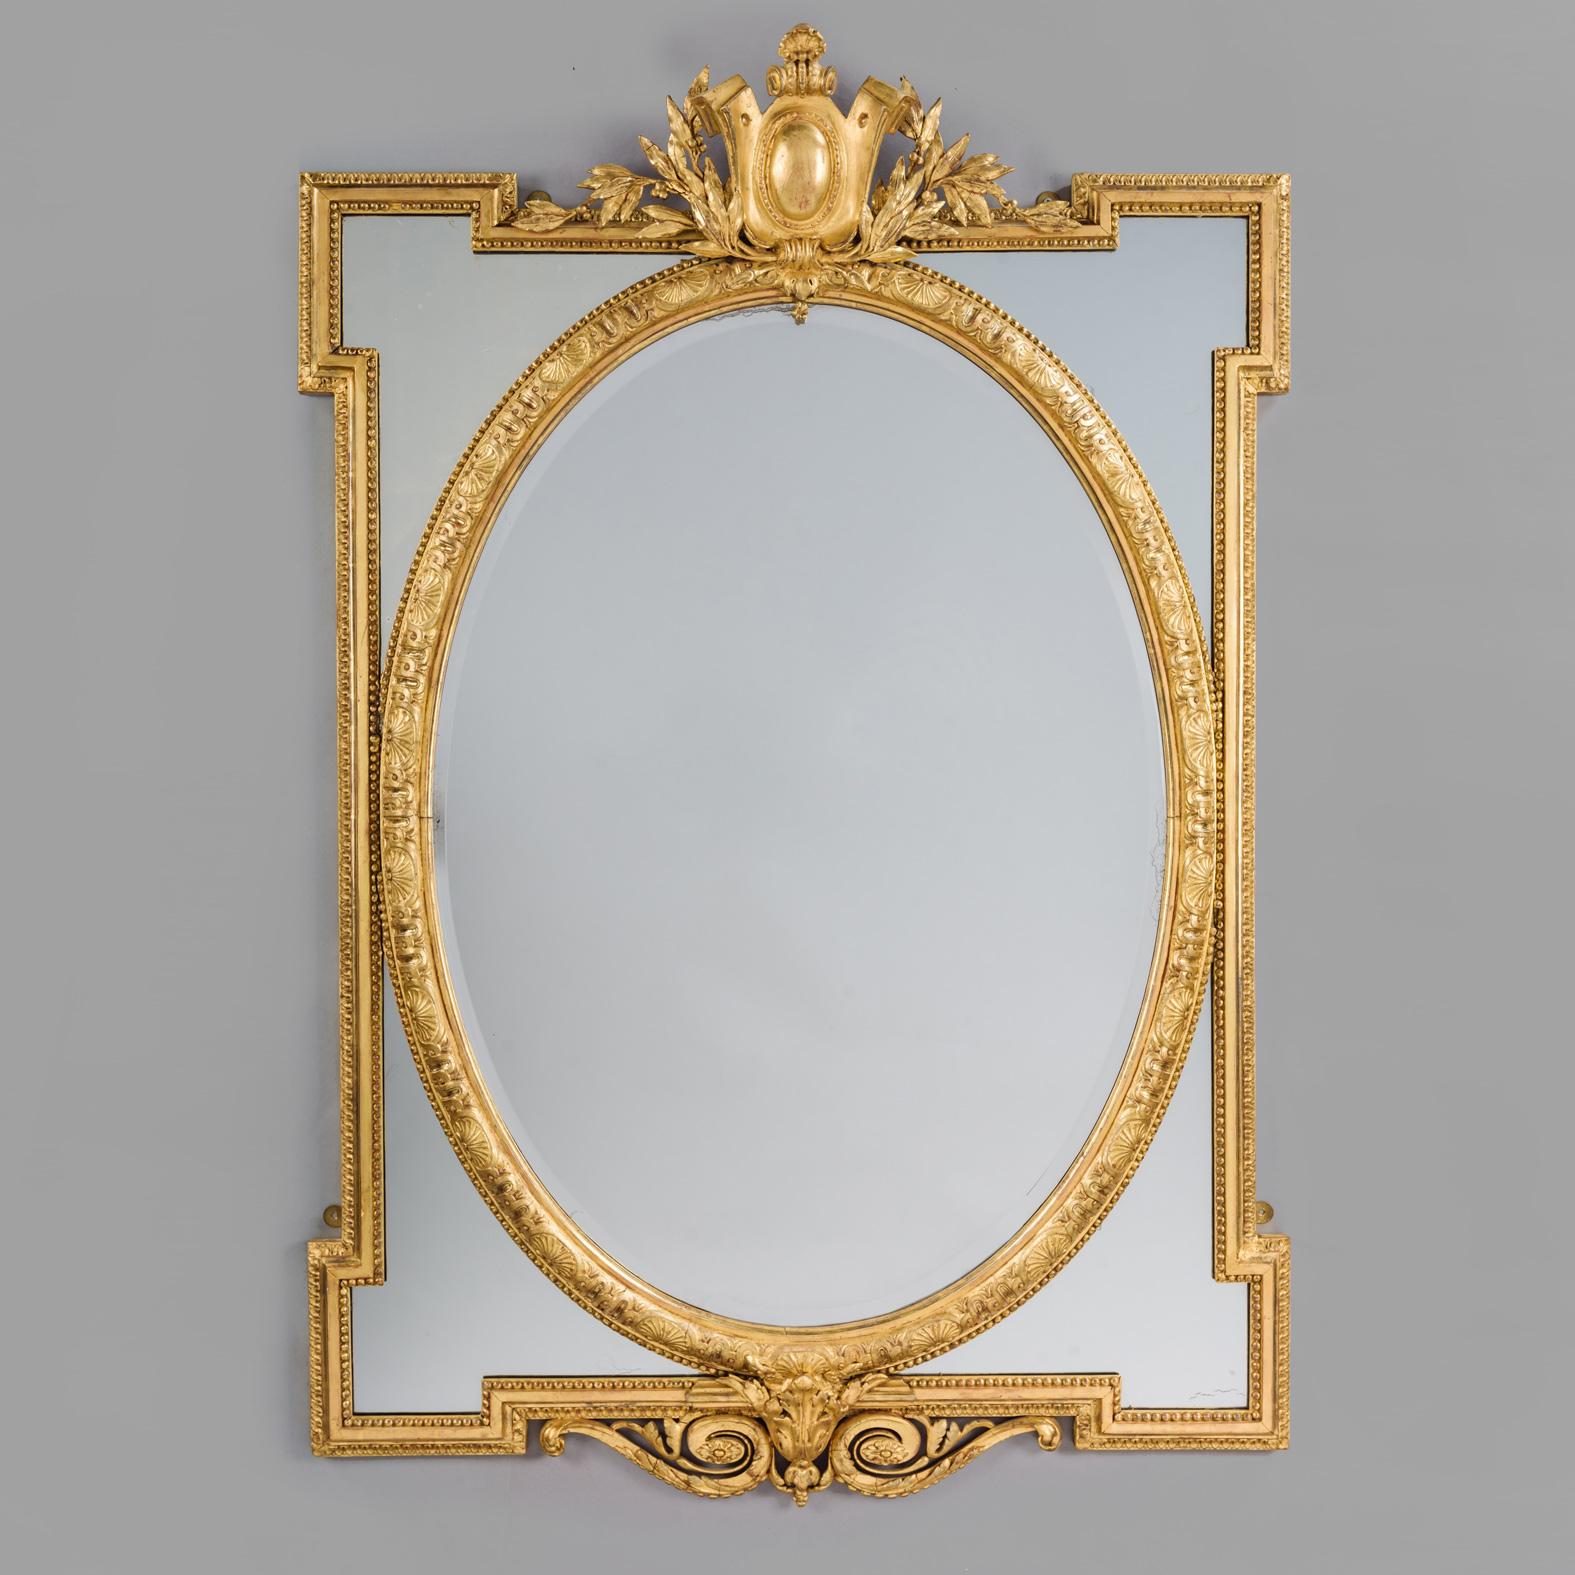 Ein feines Paar von Louis XVI-Stil Giltwood Marginal Frame-Spiegel. 

Dieses feine Paar geschnitzter Spiegel aus Goldholz und Geso hat jeweils eine ovale, abgeschrägte Spiegelplatte, die von vier verspiegelten Zwickeln innerhalb von mit Perlen und